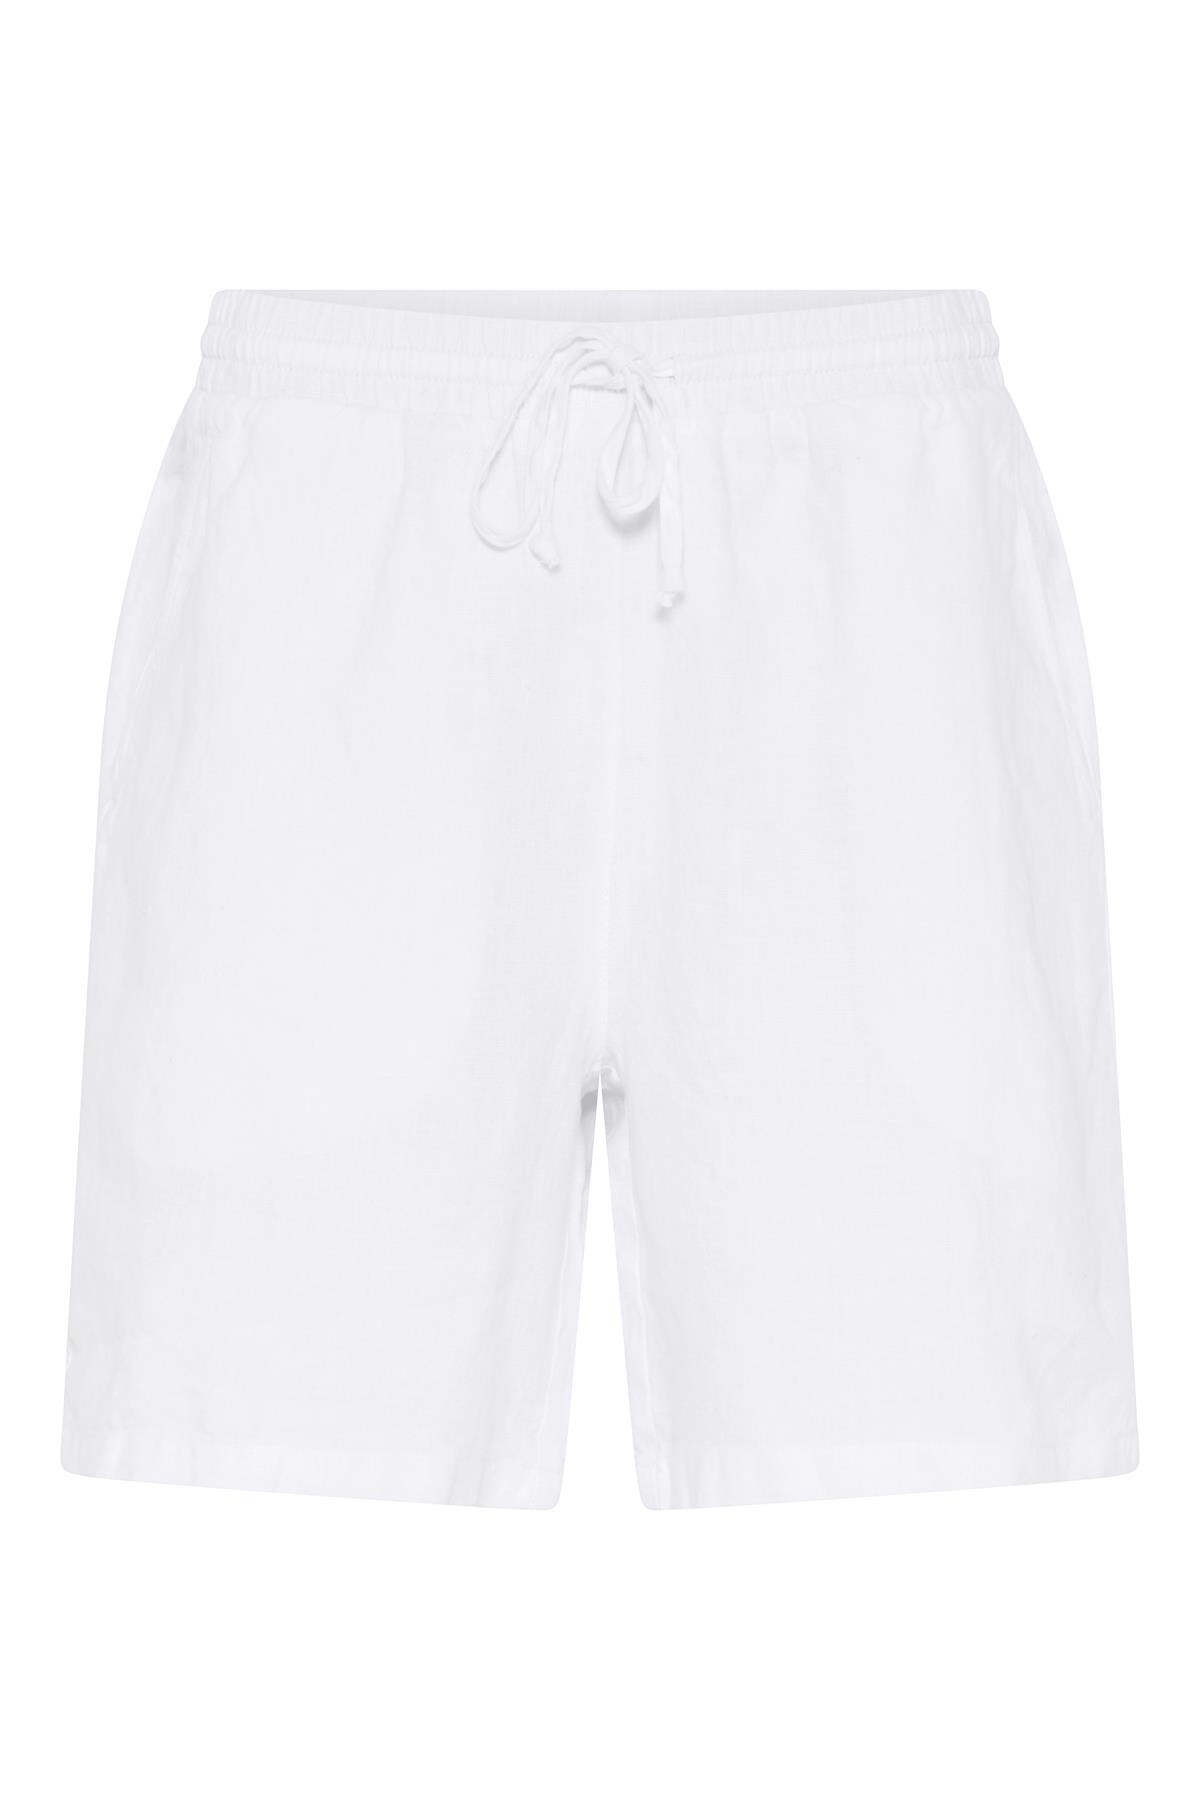 In Front Lino Shorts, Farve: Hvid, Størrelse: XL, Dame